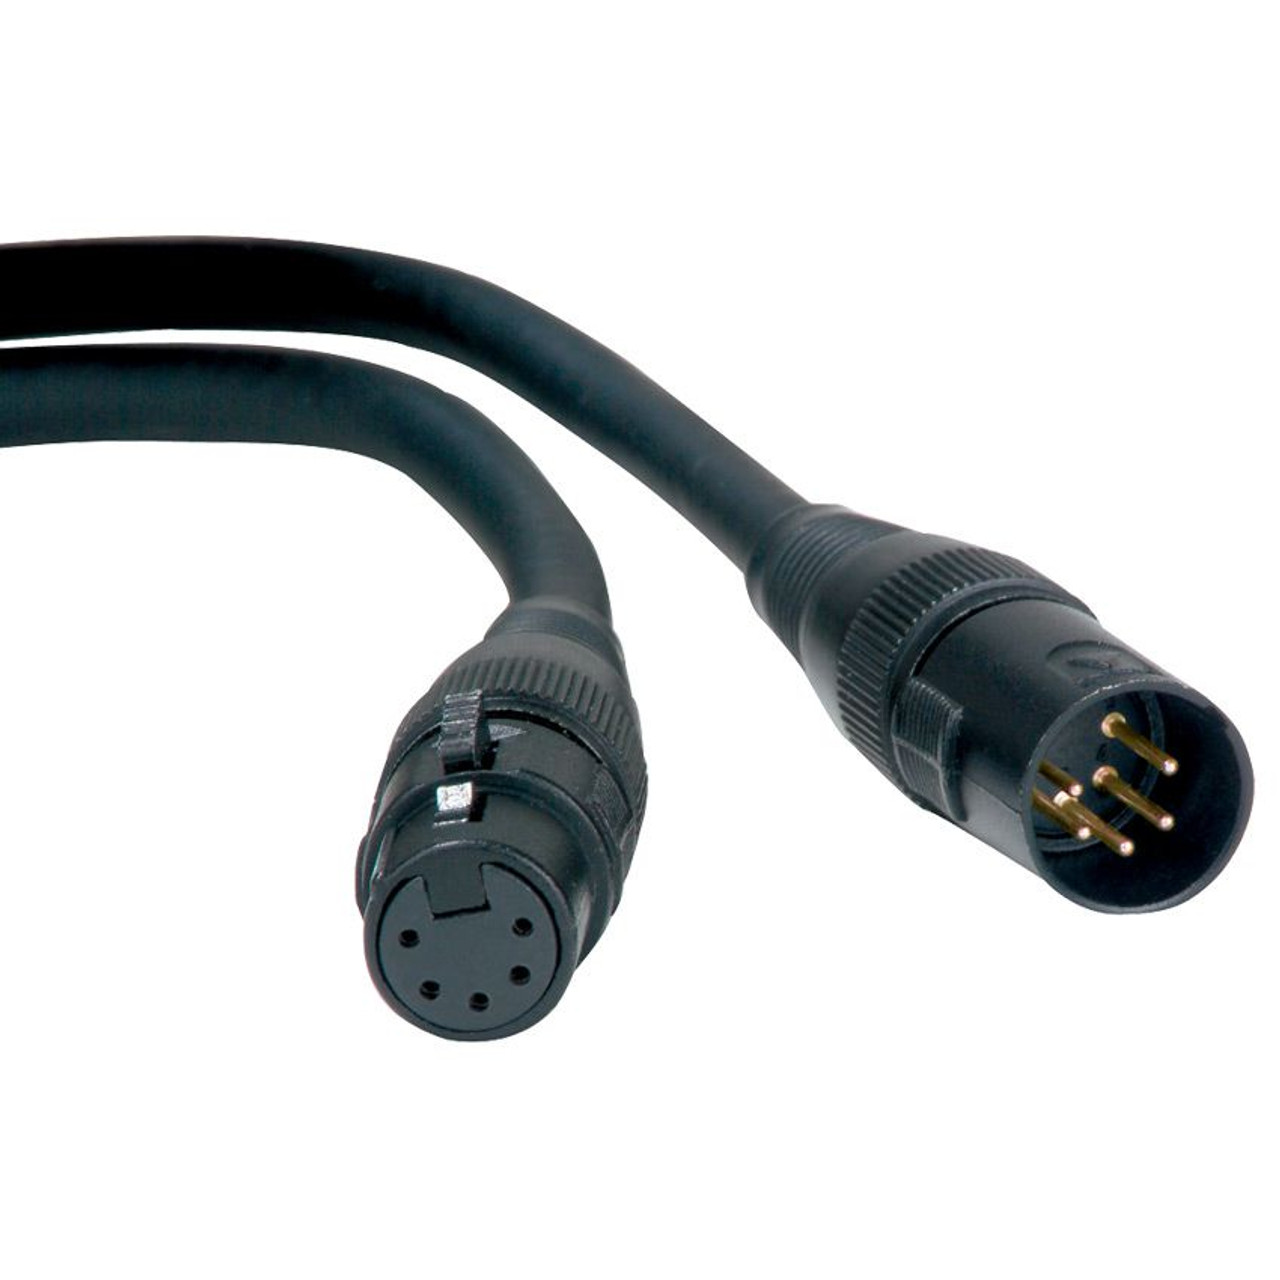 Accu Cable DMX 25-Ft. 3 PIN DMX Cable AC3PDMX25 4-PAK